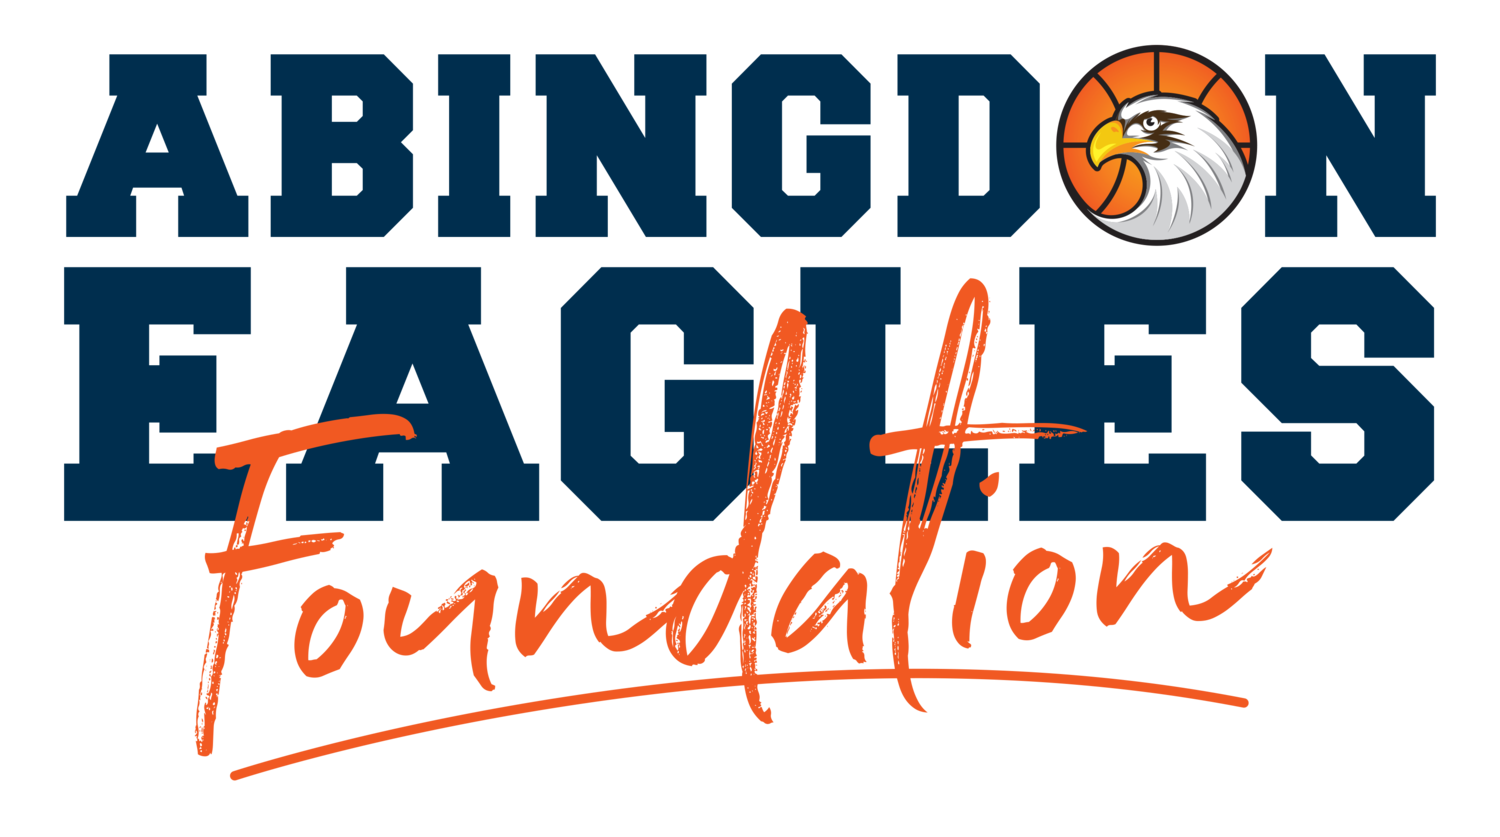 Abingdon Eagles Foundation